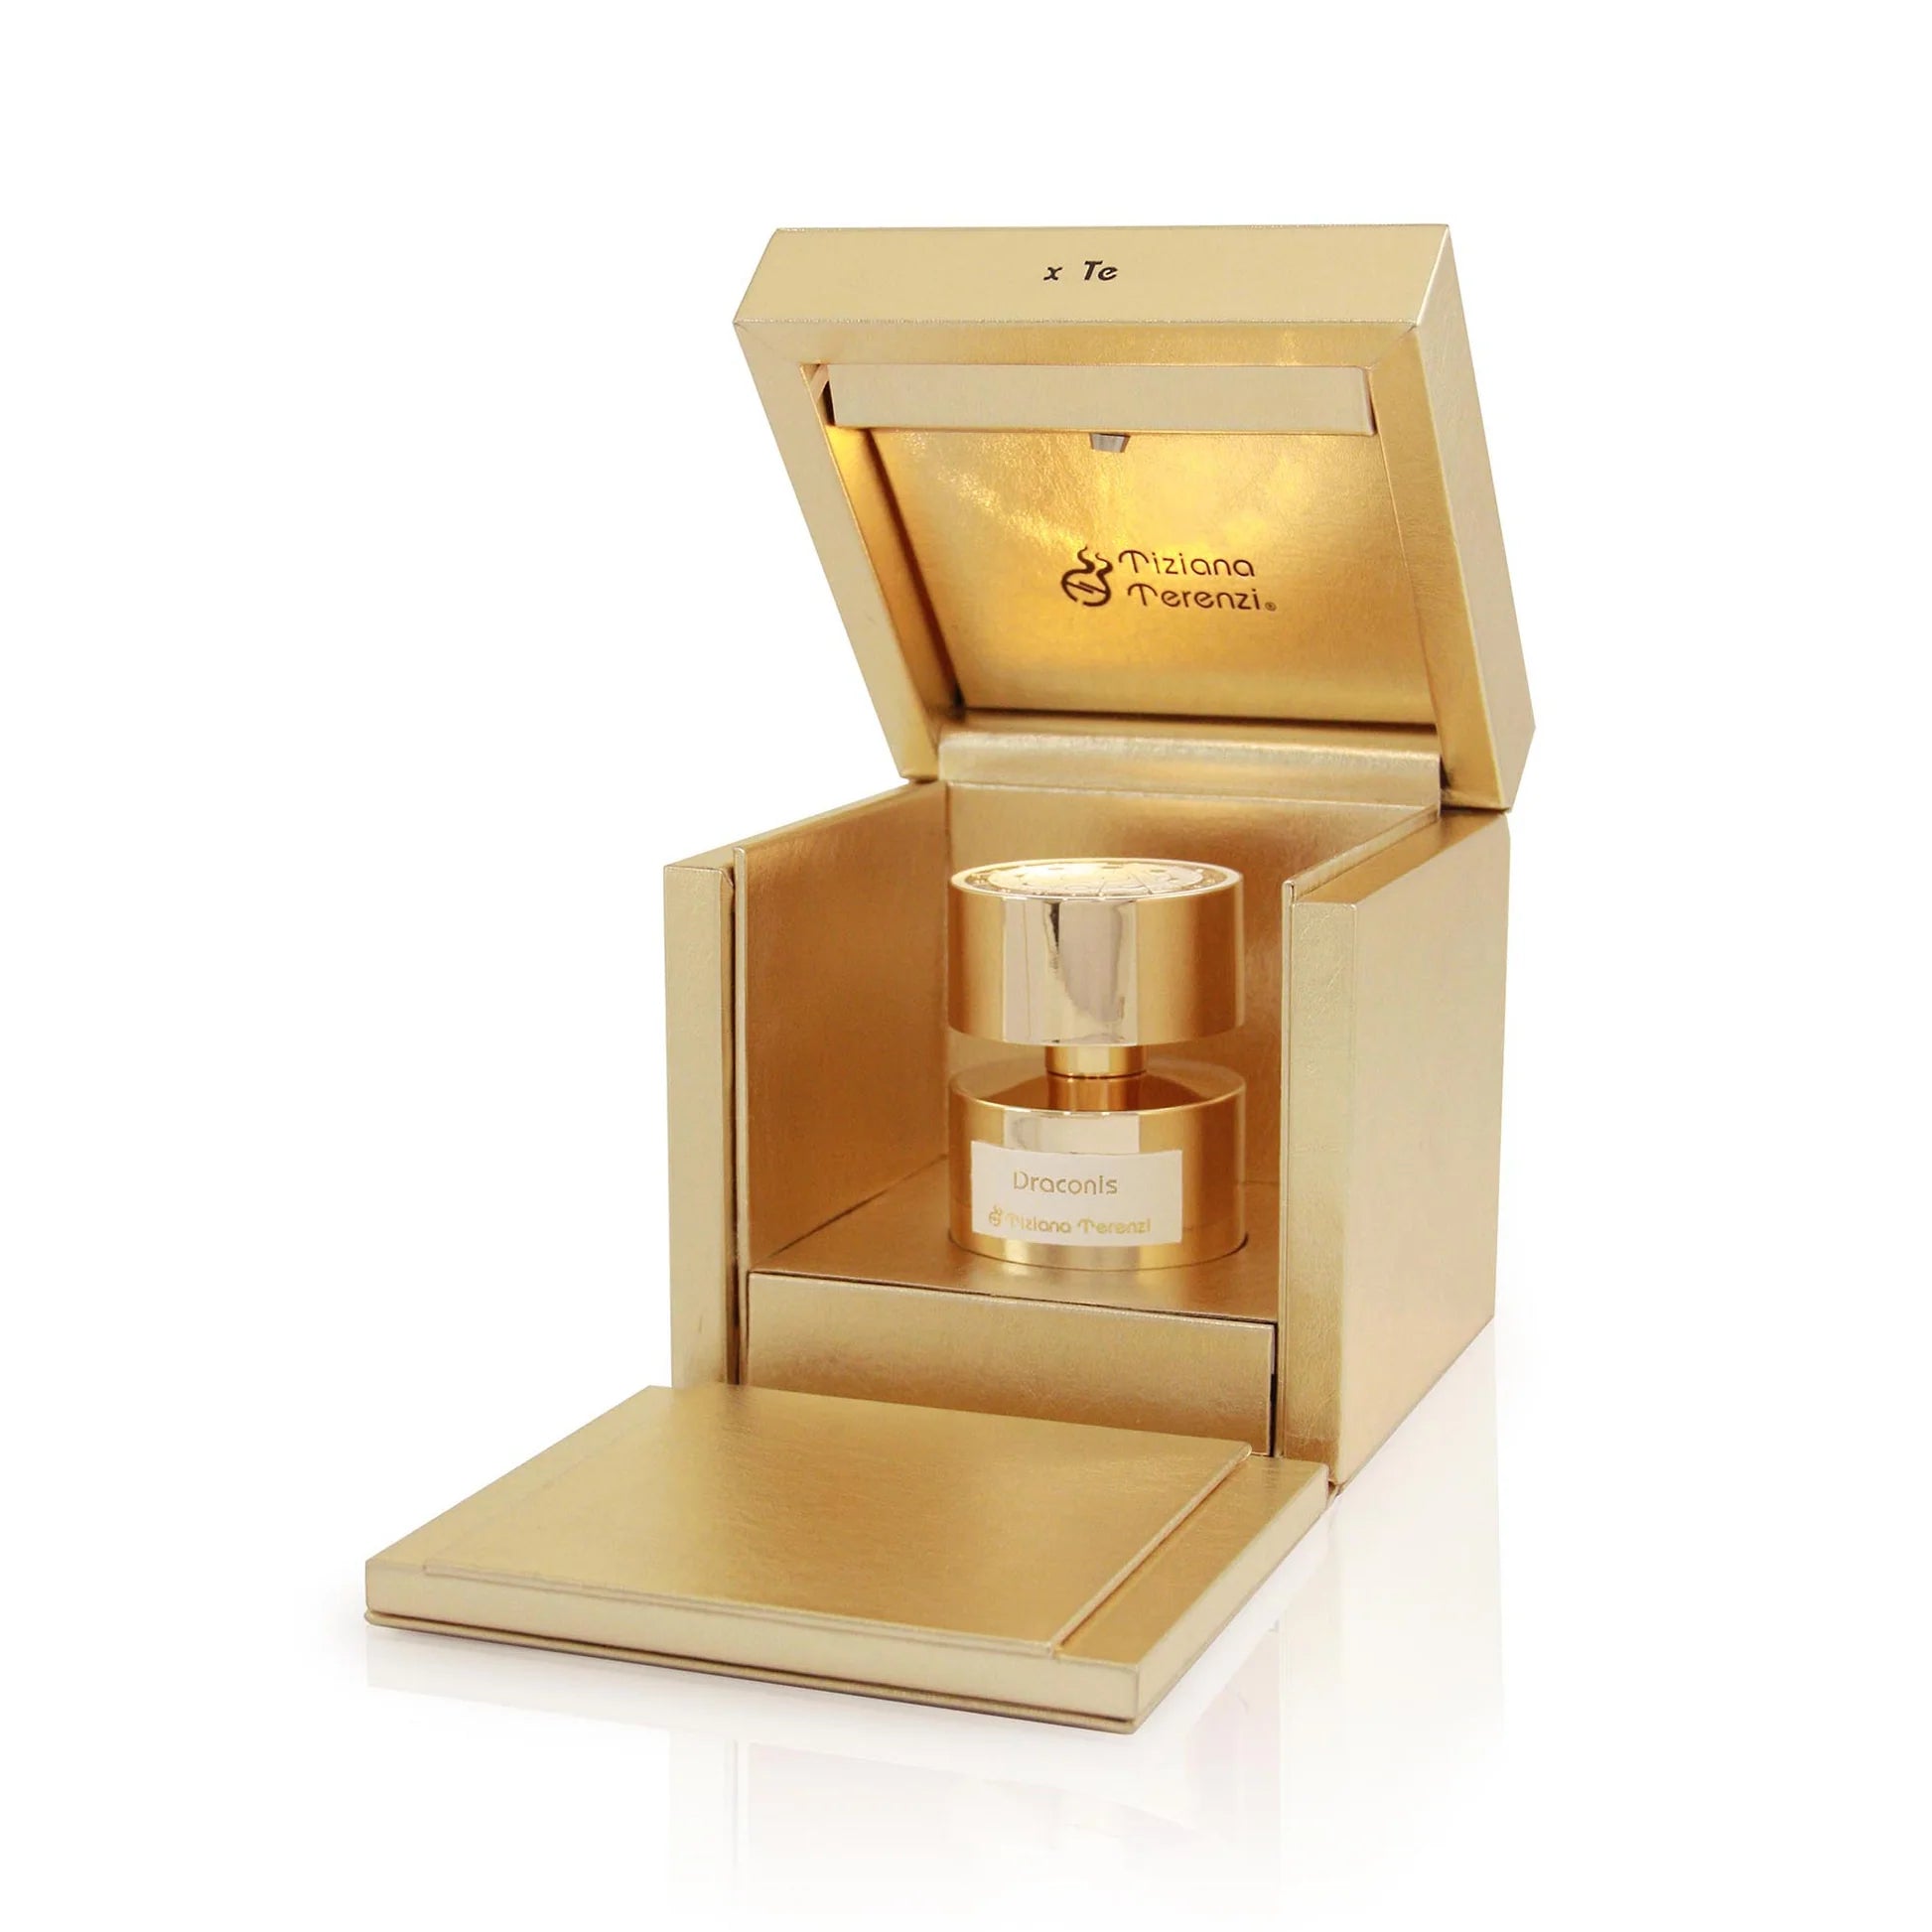 Tiziana Terenzi Luna Star Collection Draconis Extrait De Parfum | My Perfume Shop Australia